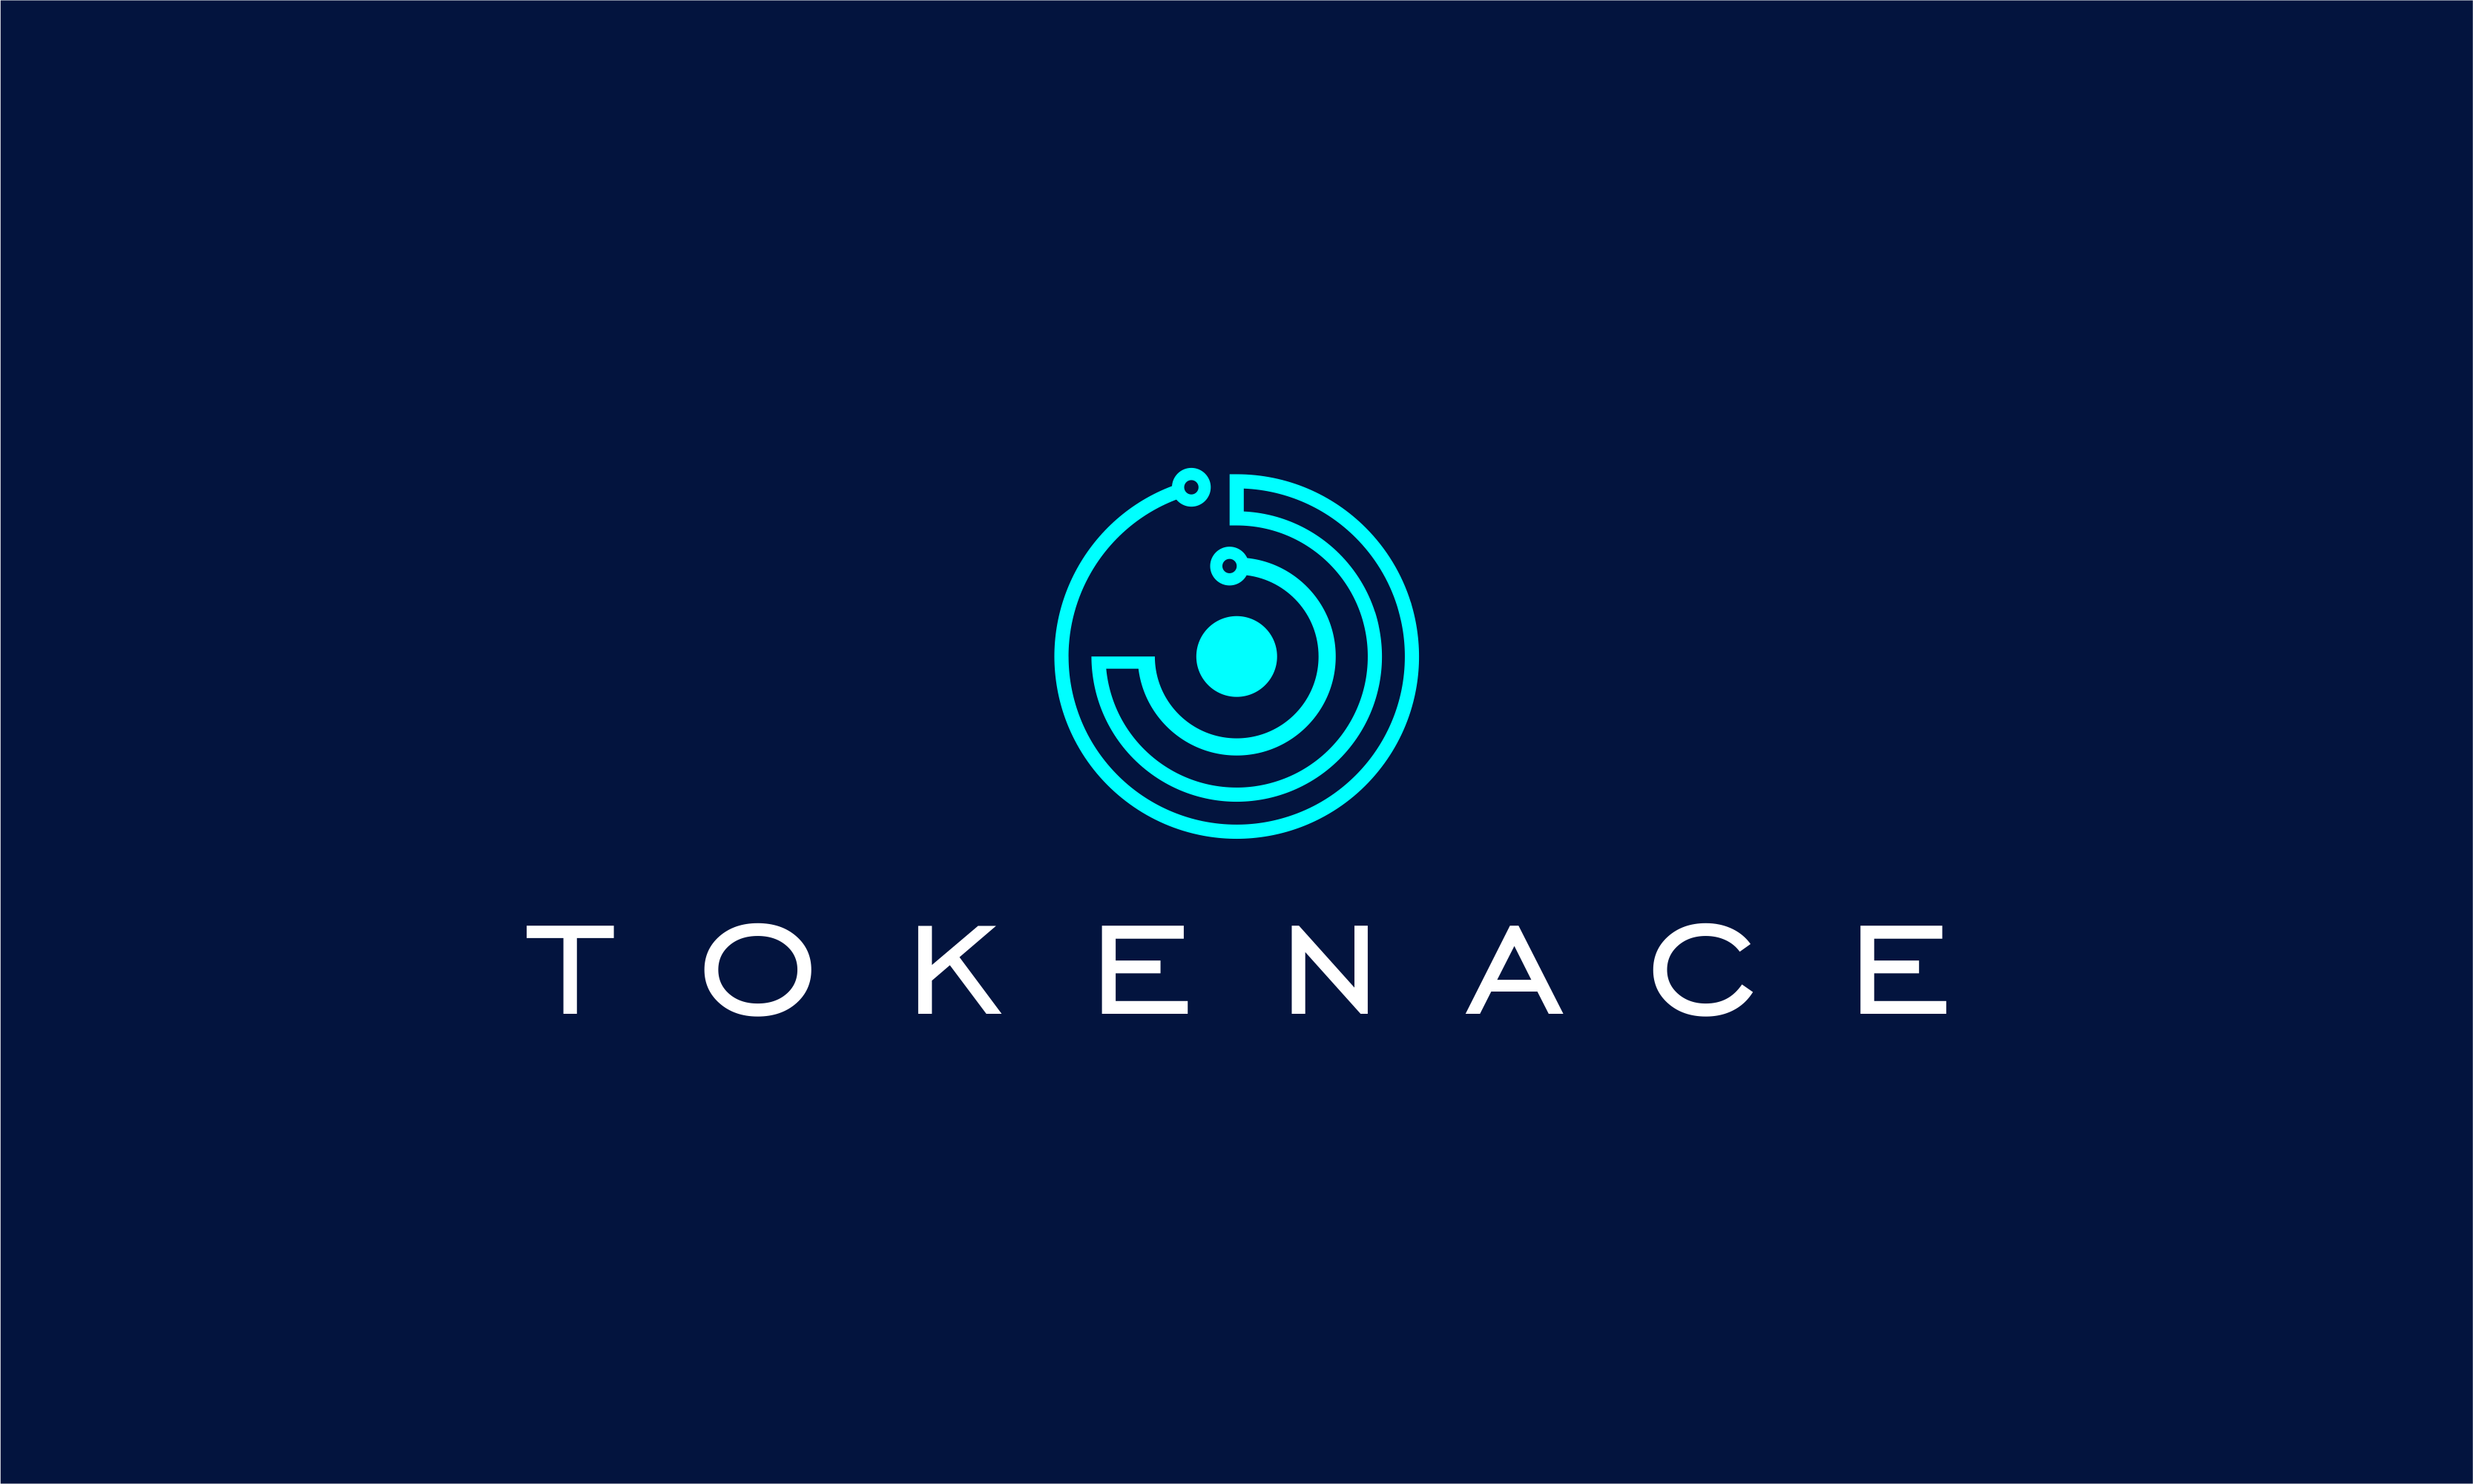 tokenace.png